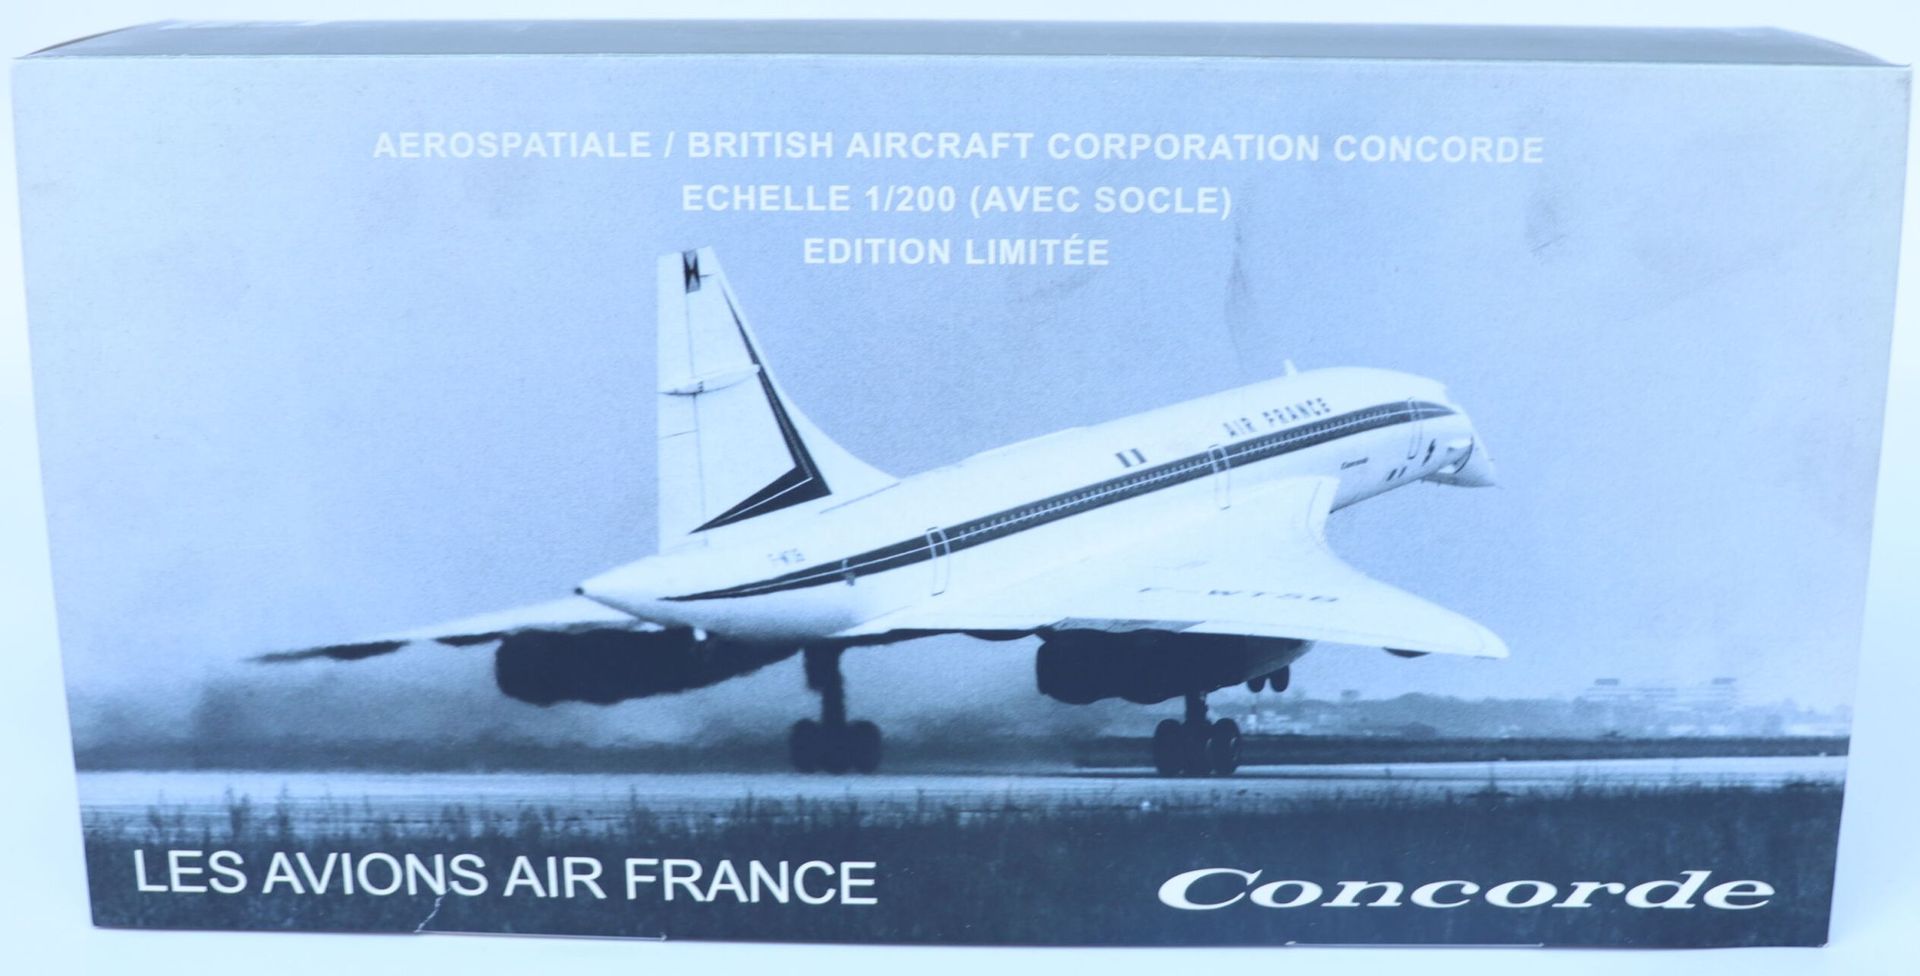 Null 法国康科德航空公司。

协和飞机注册的F-WTSB的大型压铸Socatec模型。(测试和示范飞行)

比例为1/200。

法航博物馆限量版。

全新&hellip;